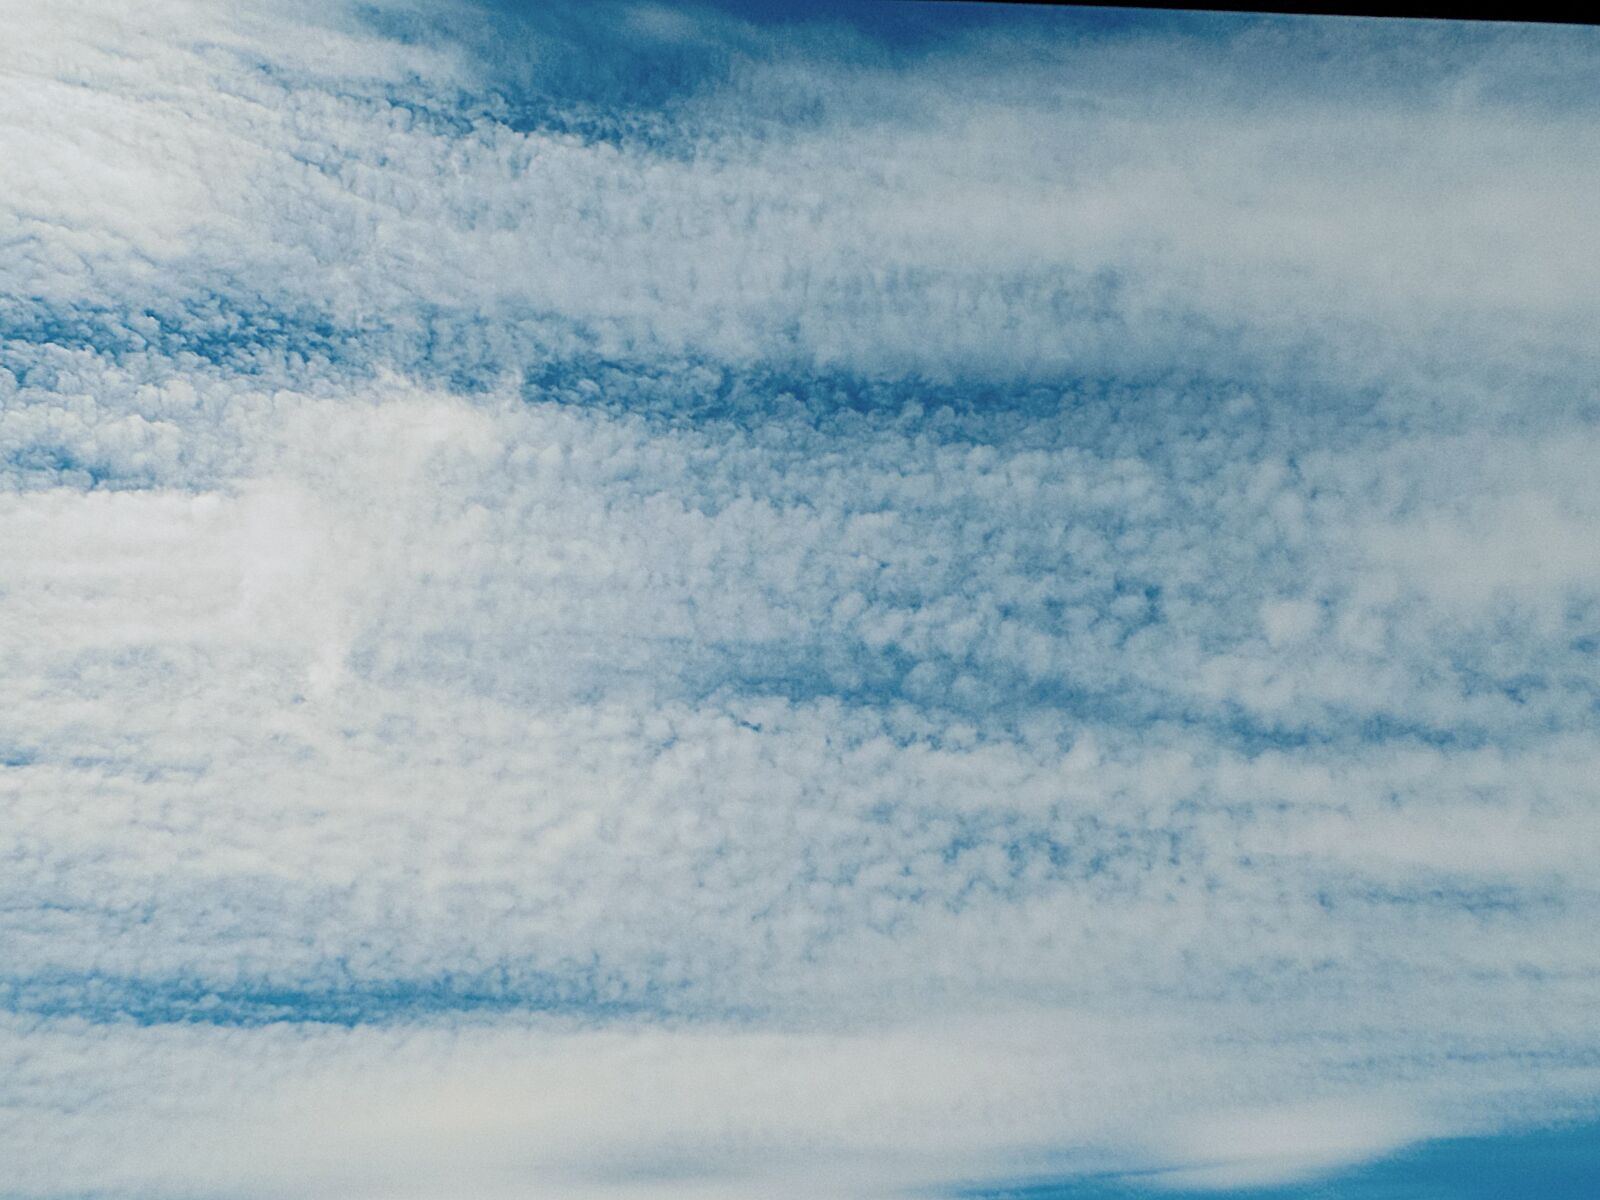 Nikon COOLPIX L340 sample photo. Sky, cloud, nature photography